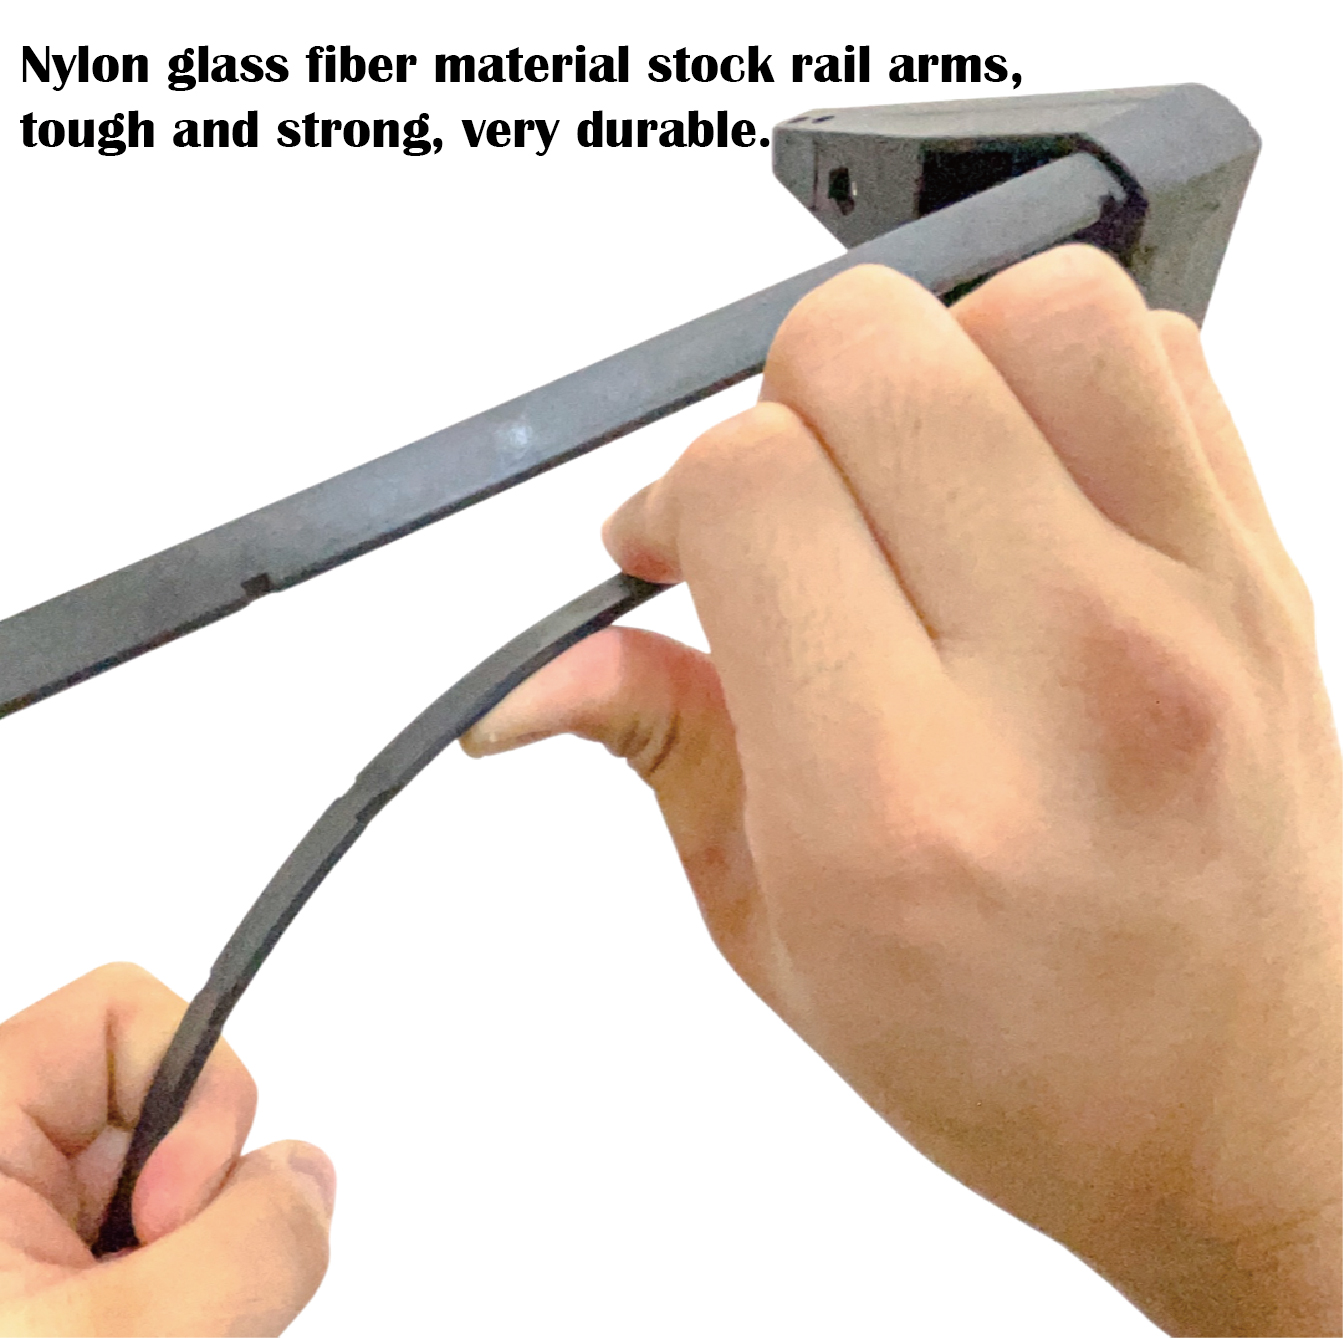 拉桿使用尼龍+50%玻璃纖維,具高強度任性且非常耐用